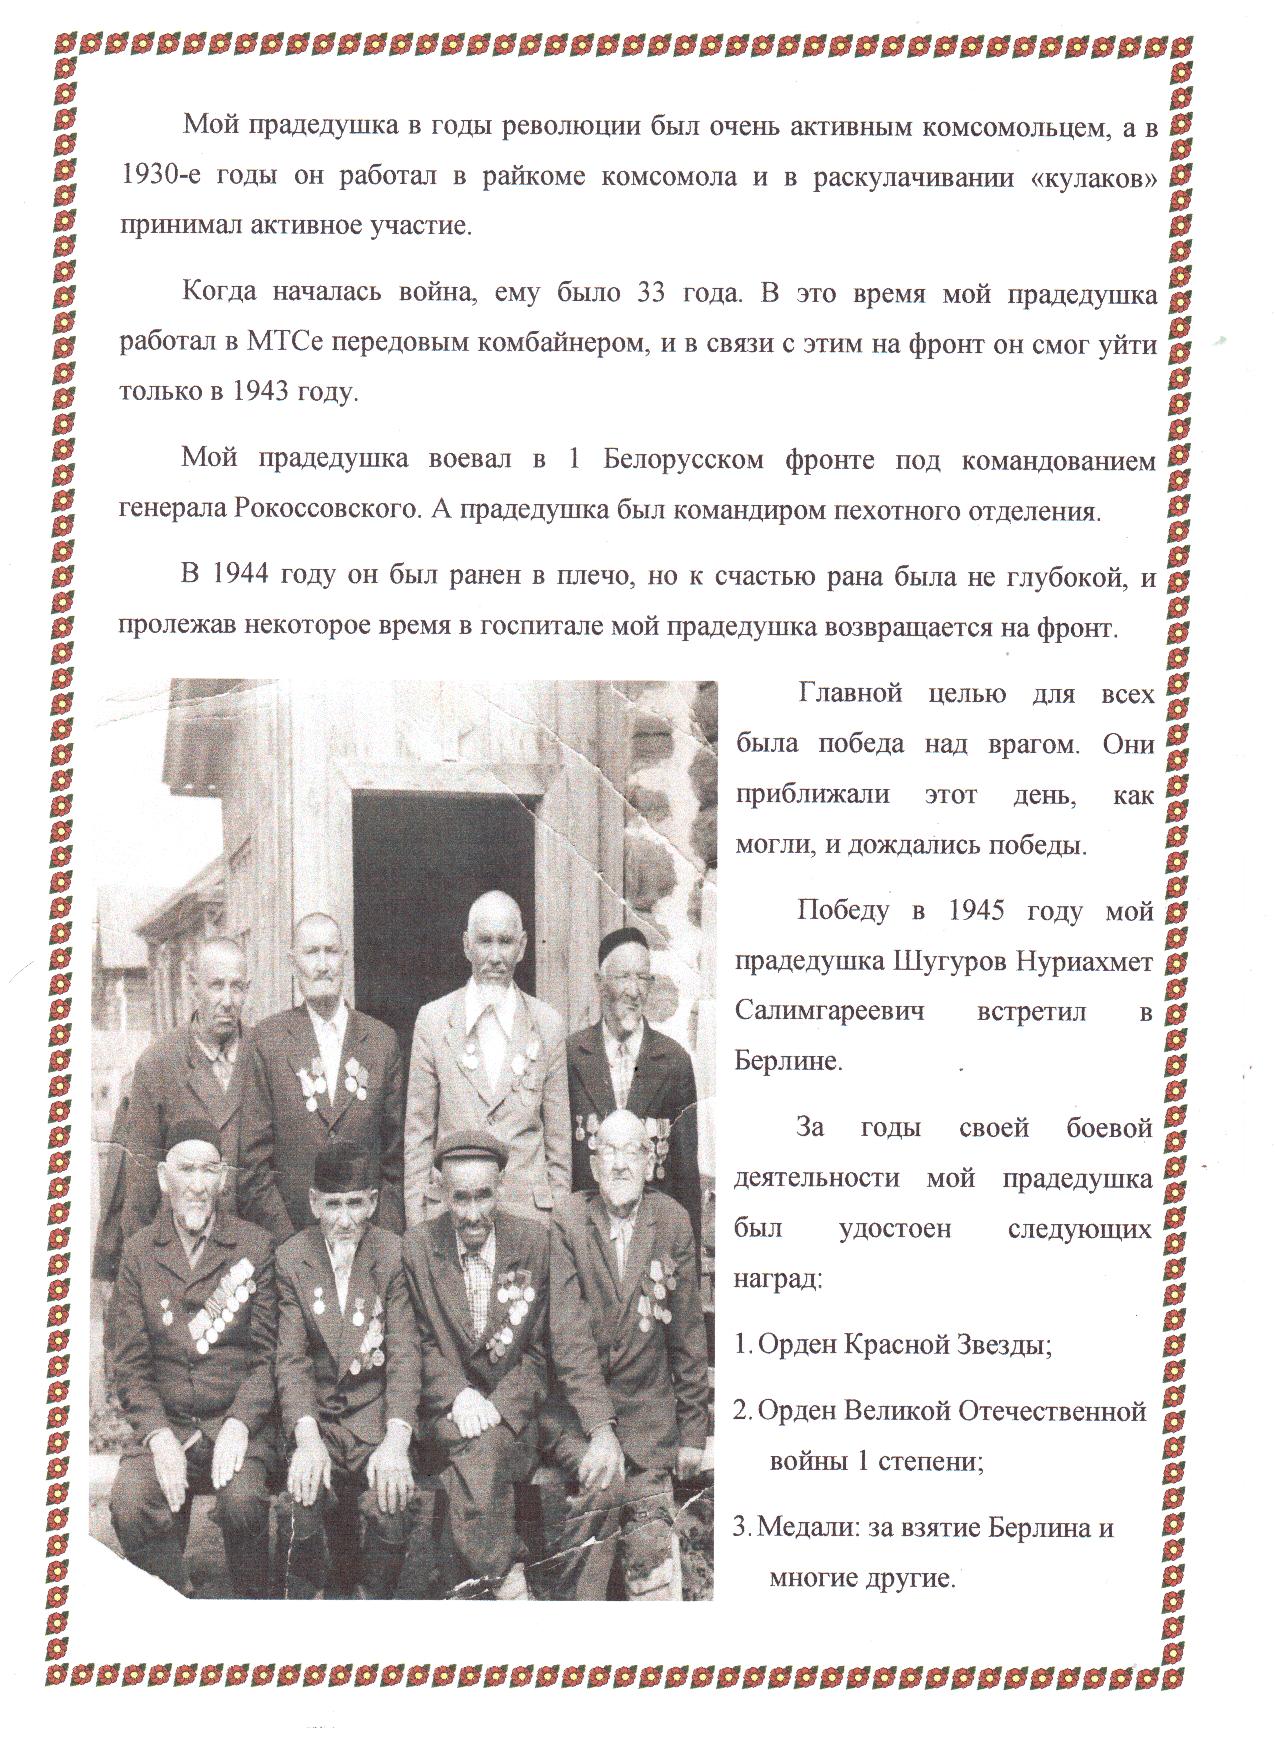 Годы Великой Отечественной Войны в судьбе моего прадедушки Шугурова Нуриахмета Салимгареевича